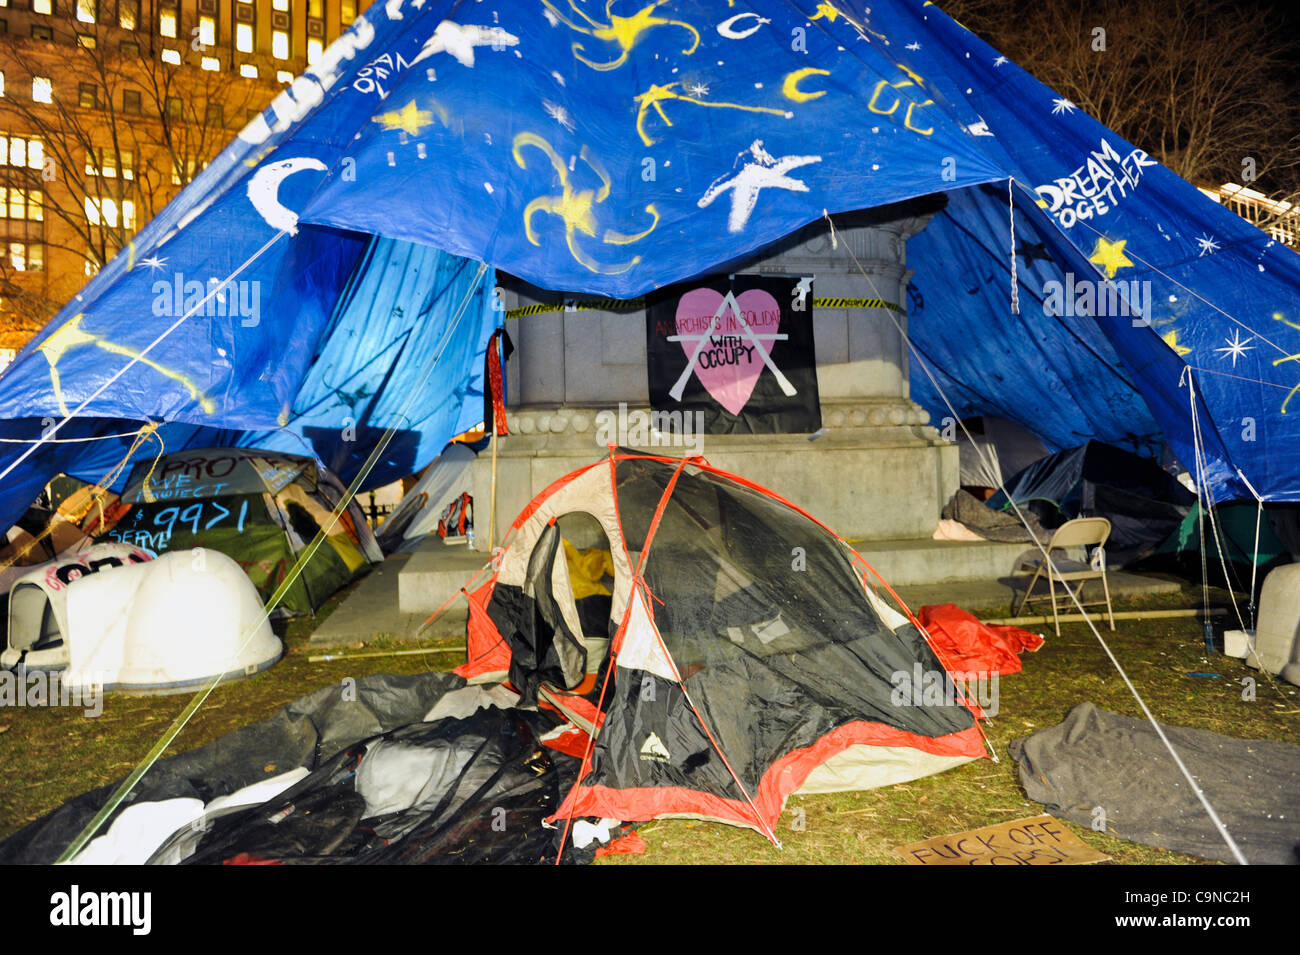 1-30-2012, McPherson Square, occupent Washington DC, il y a encore beaucoup de tentes et des manifestants sur la place McPherson la nuit la ville avait dit à l'occupant pas plus de dormir ou en camping dans le parc. Banque D'Images